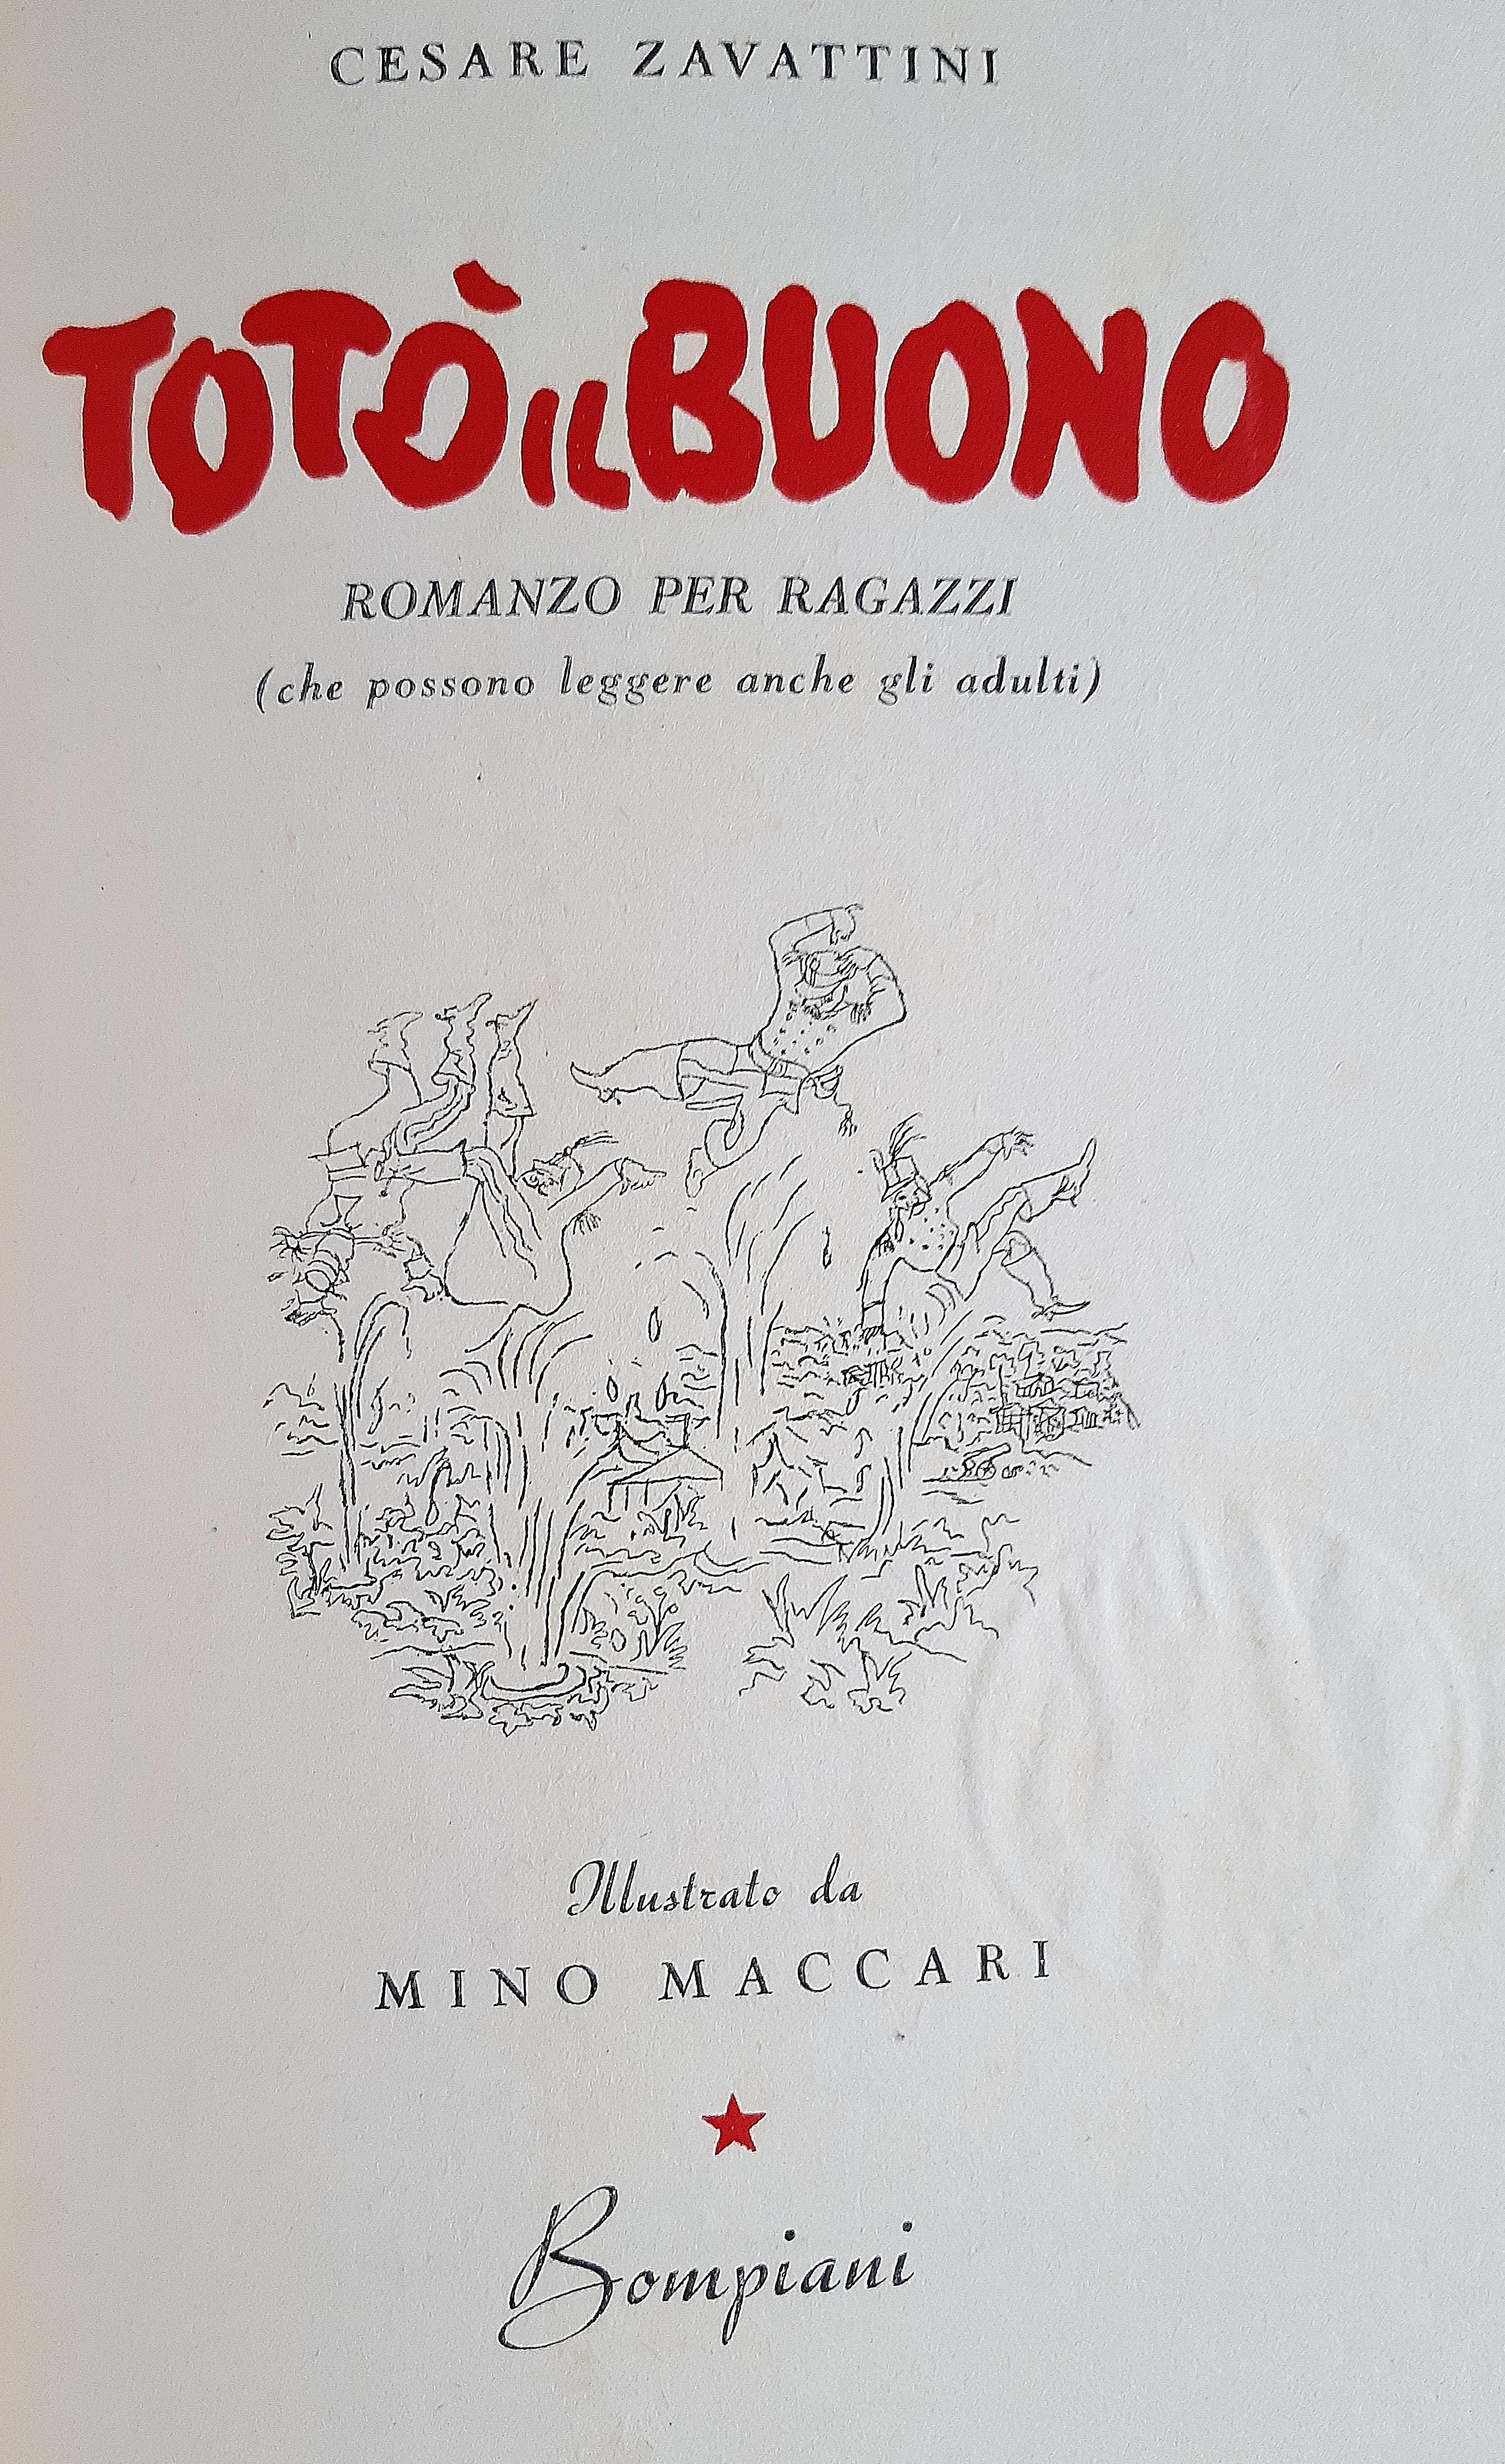 Totò il buono - Rare Book Illustrated by Mino Maccari - 1943 For Sale 4